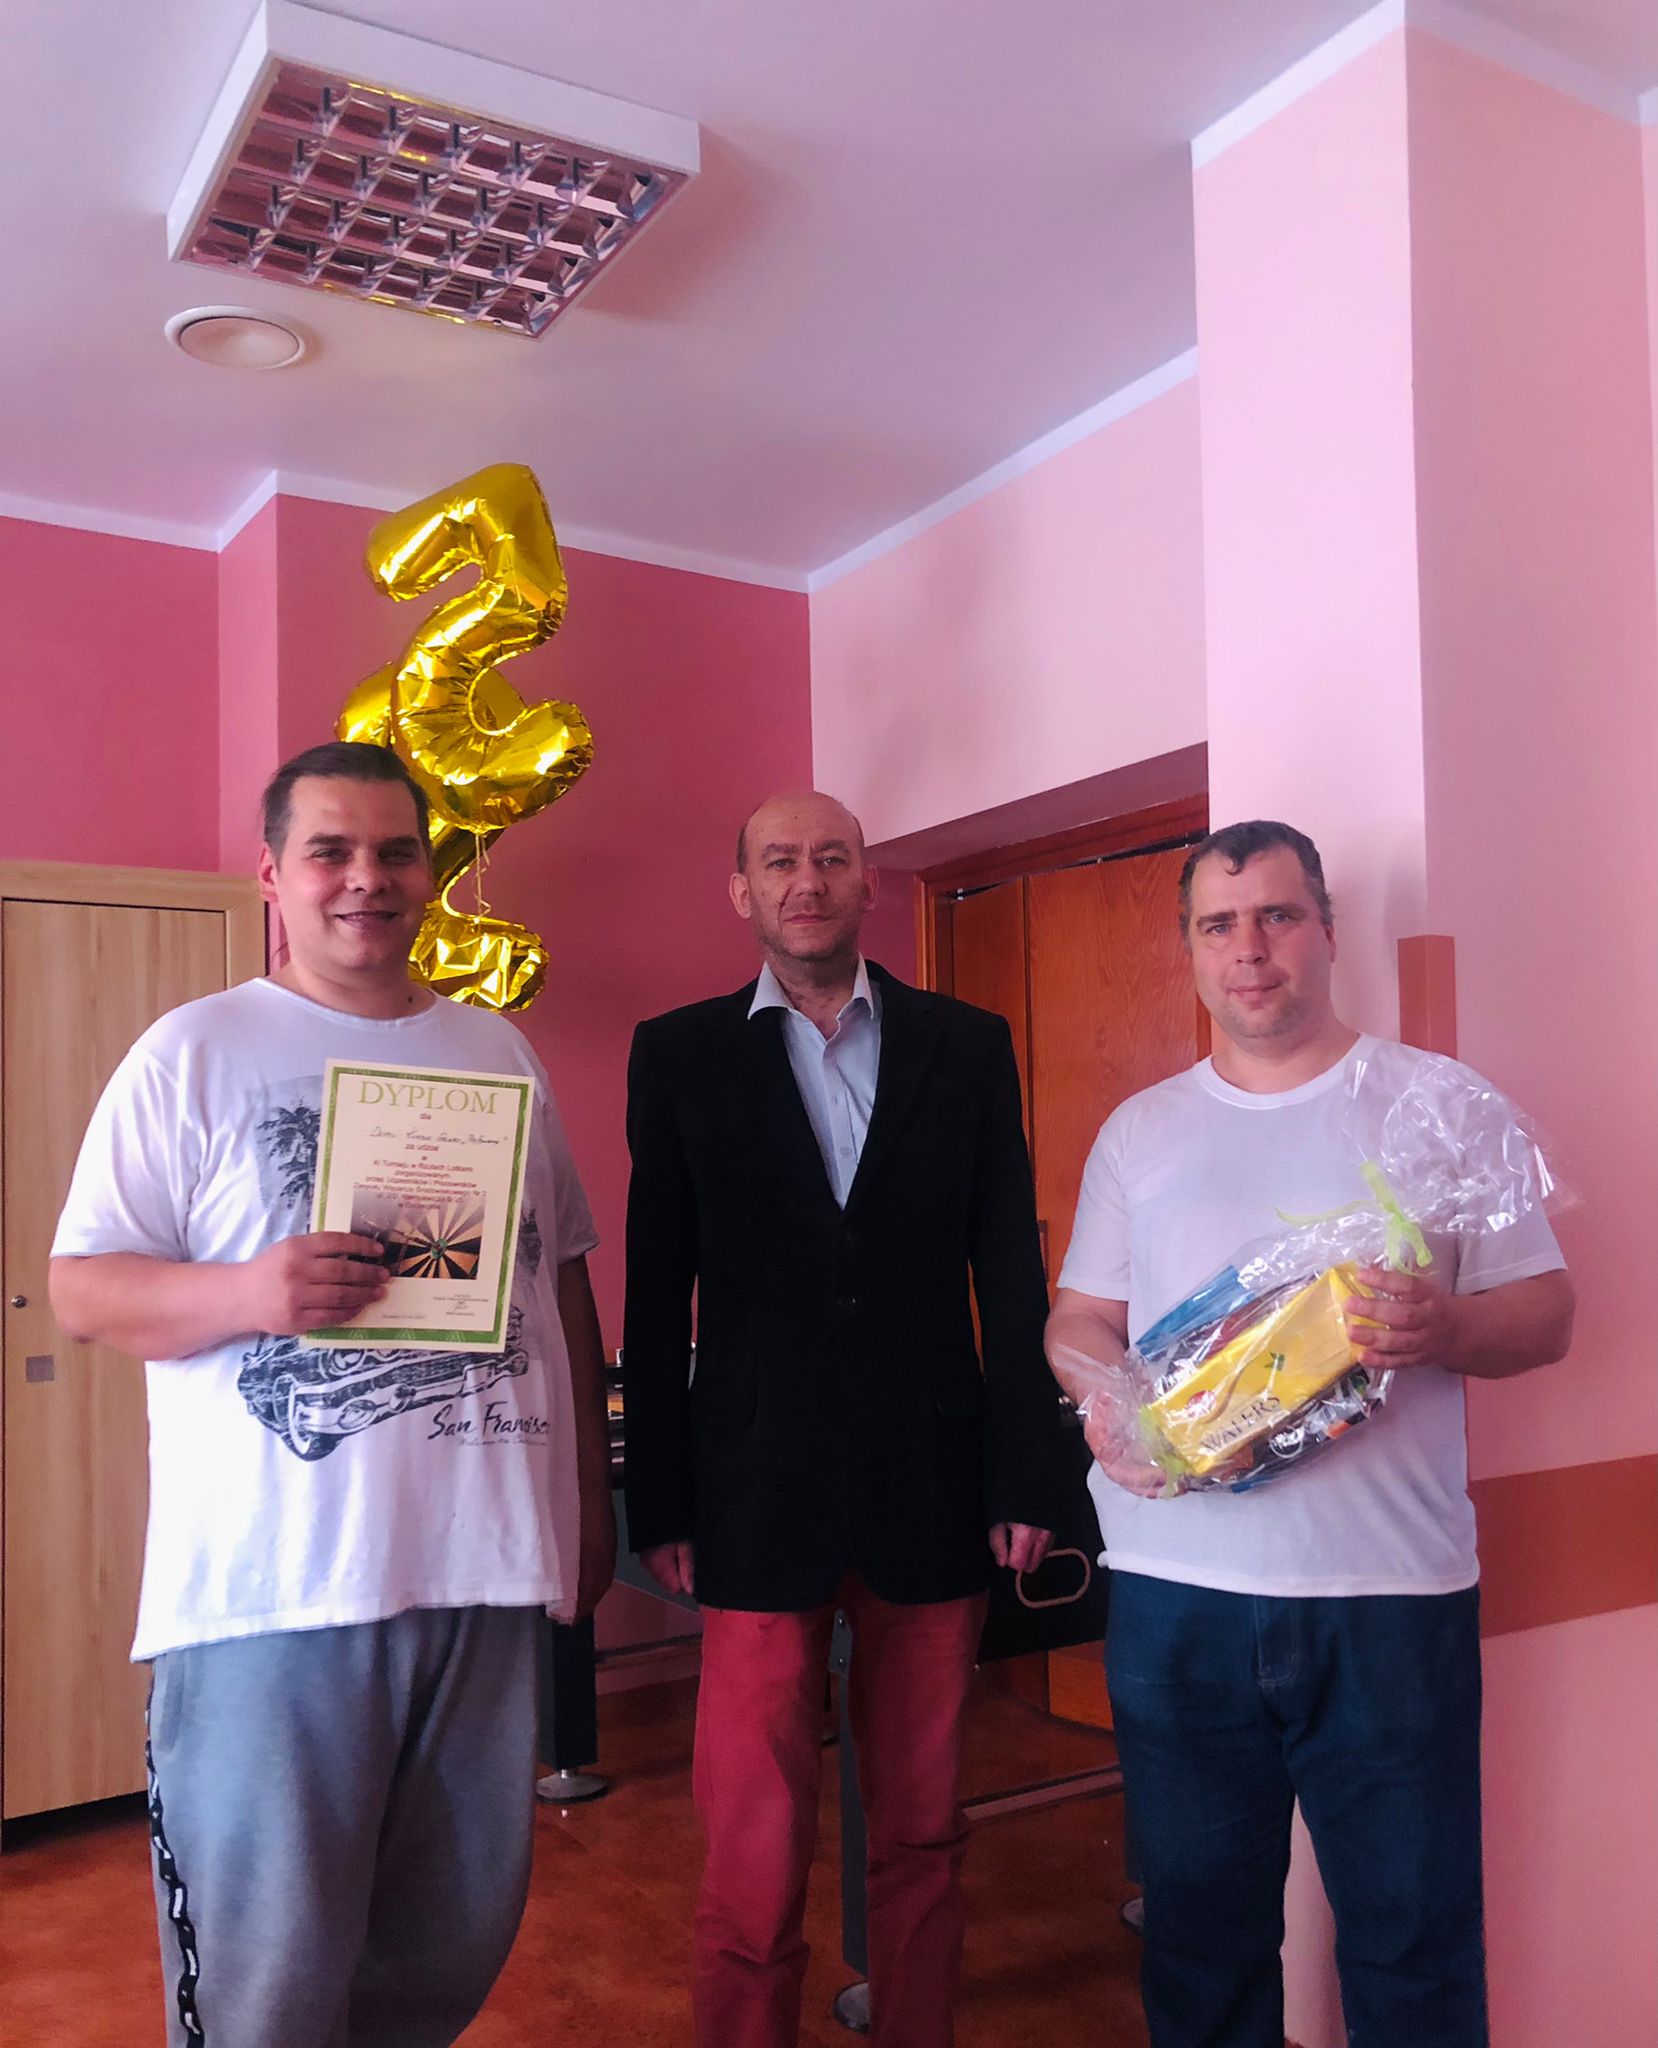 Trzech mężczyzn pozujących do zdjęcia z dyplomem i nagrodą rzeczową. 